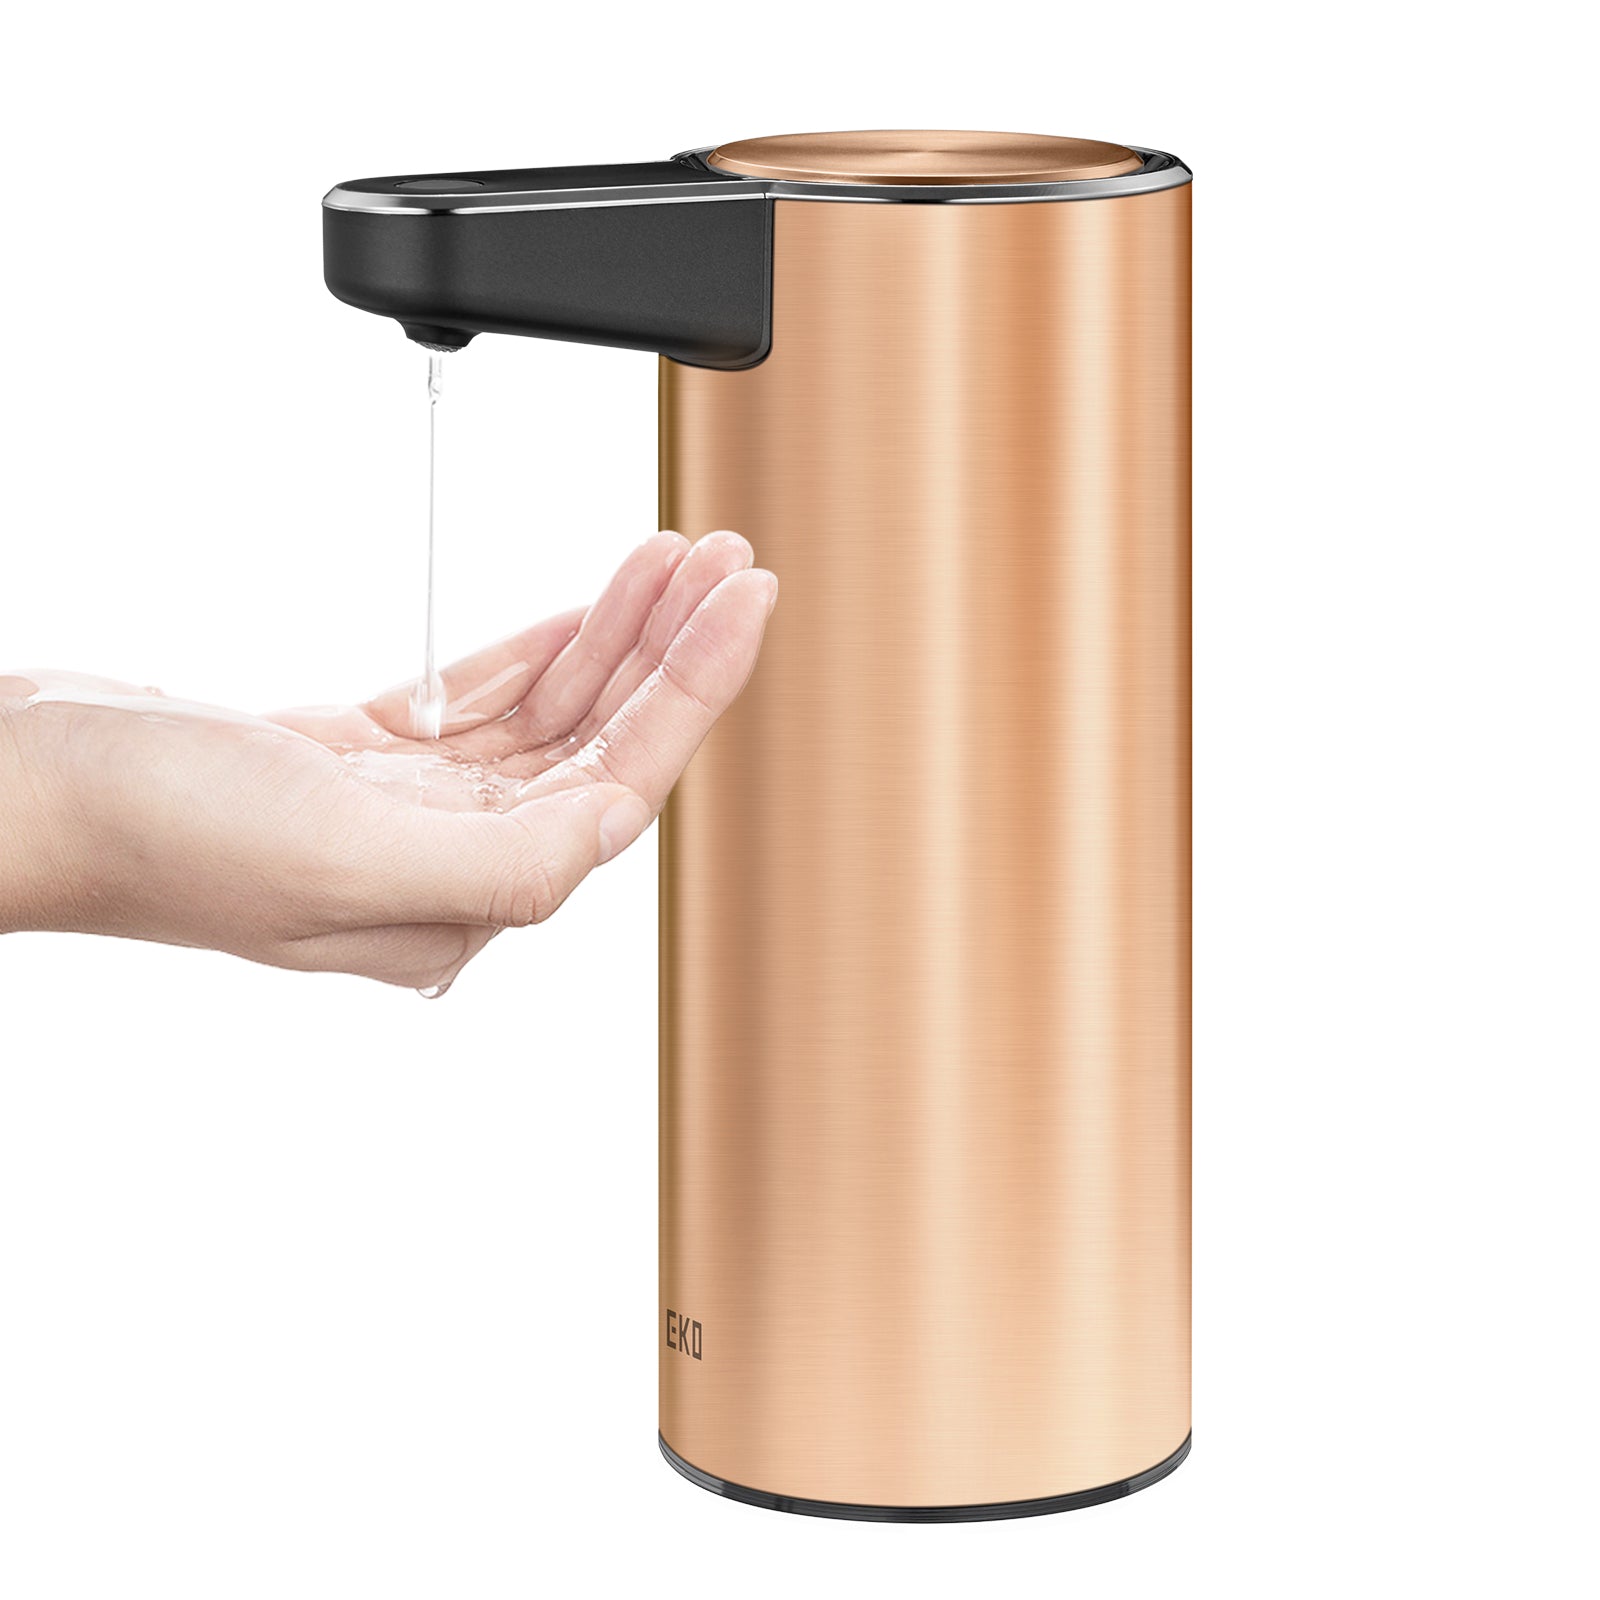 Deluxe Aroma Smart Liquid Soap Dispenser - Pearl White